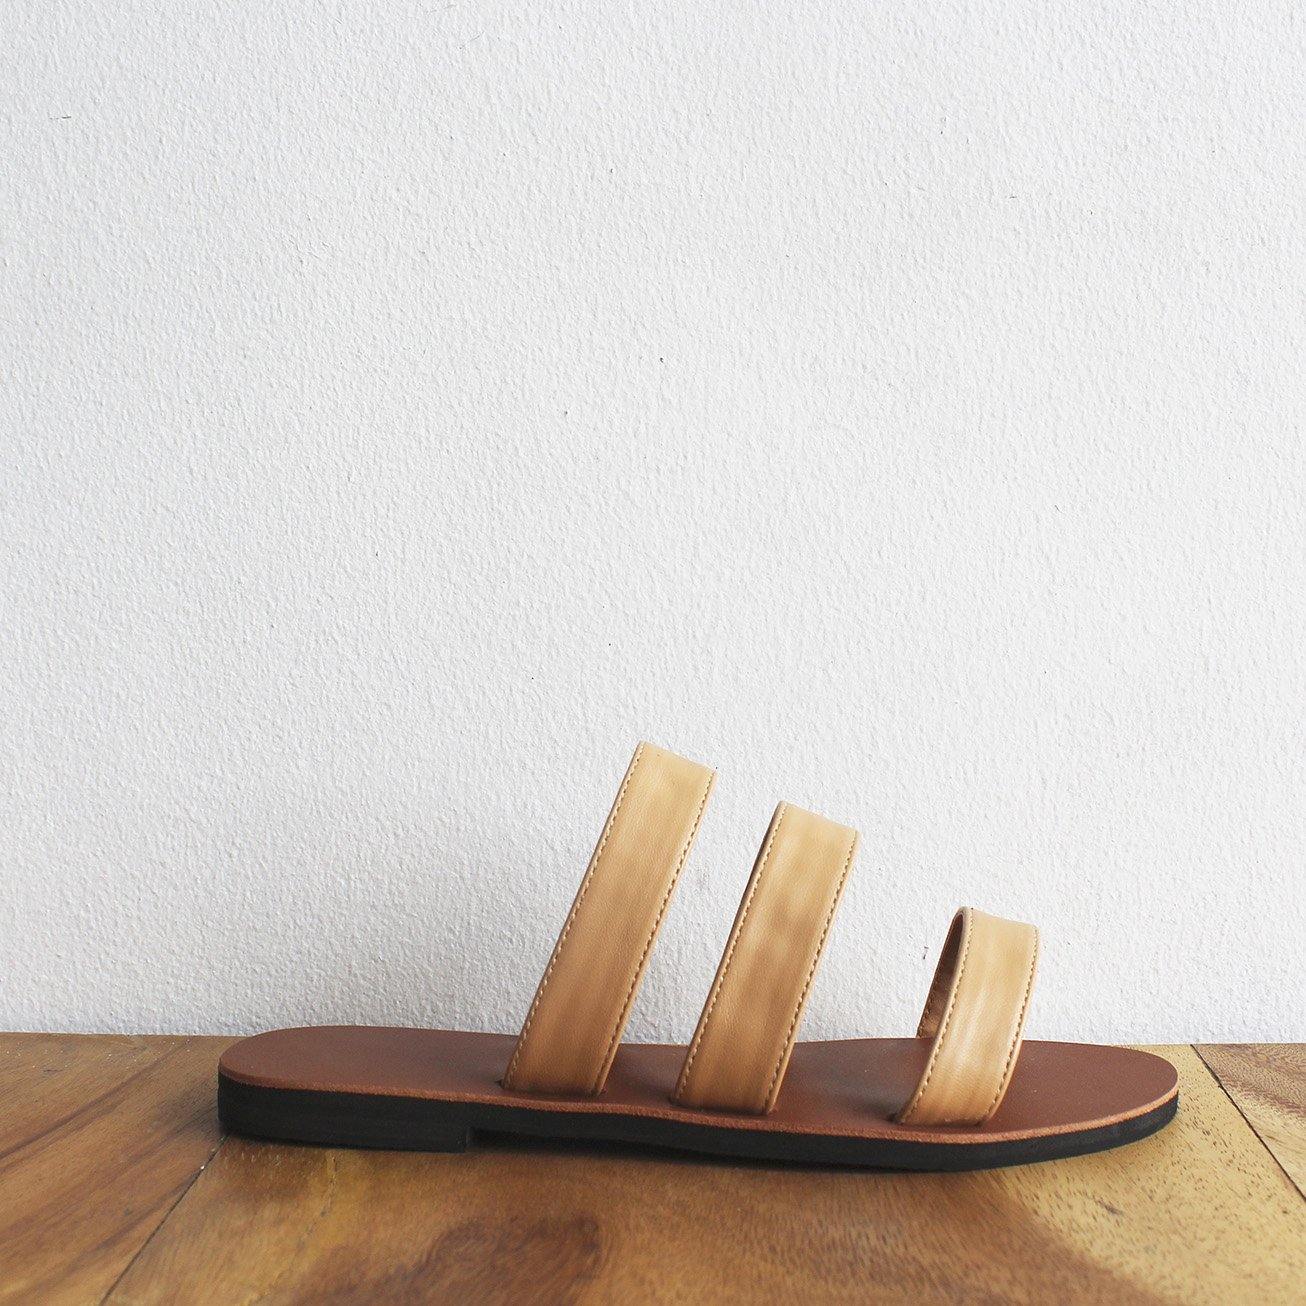 3-Strap Sandals (5 pairs per set) - Risque Manufacturing